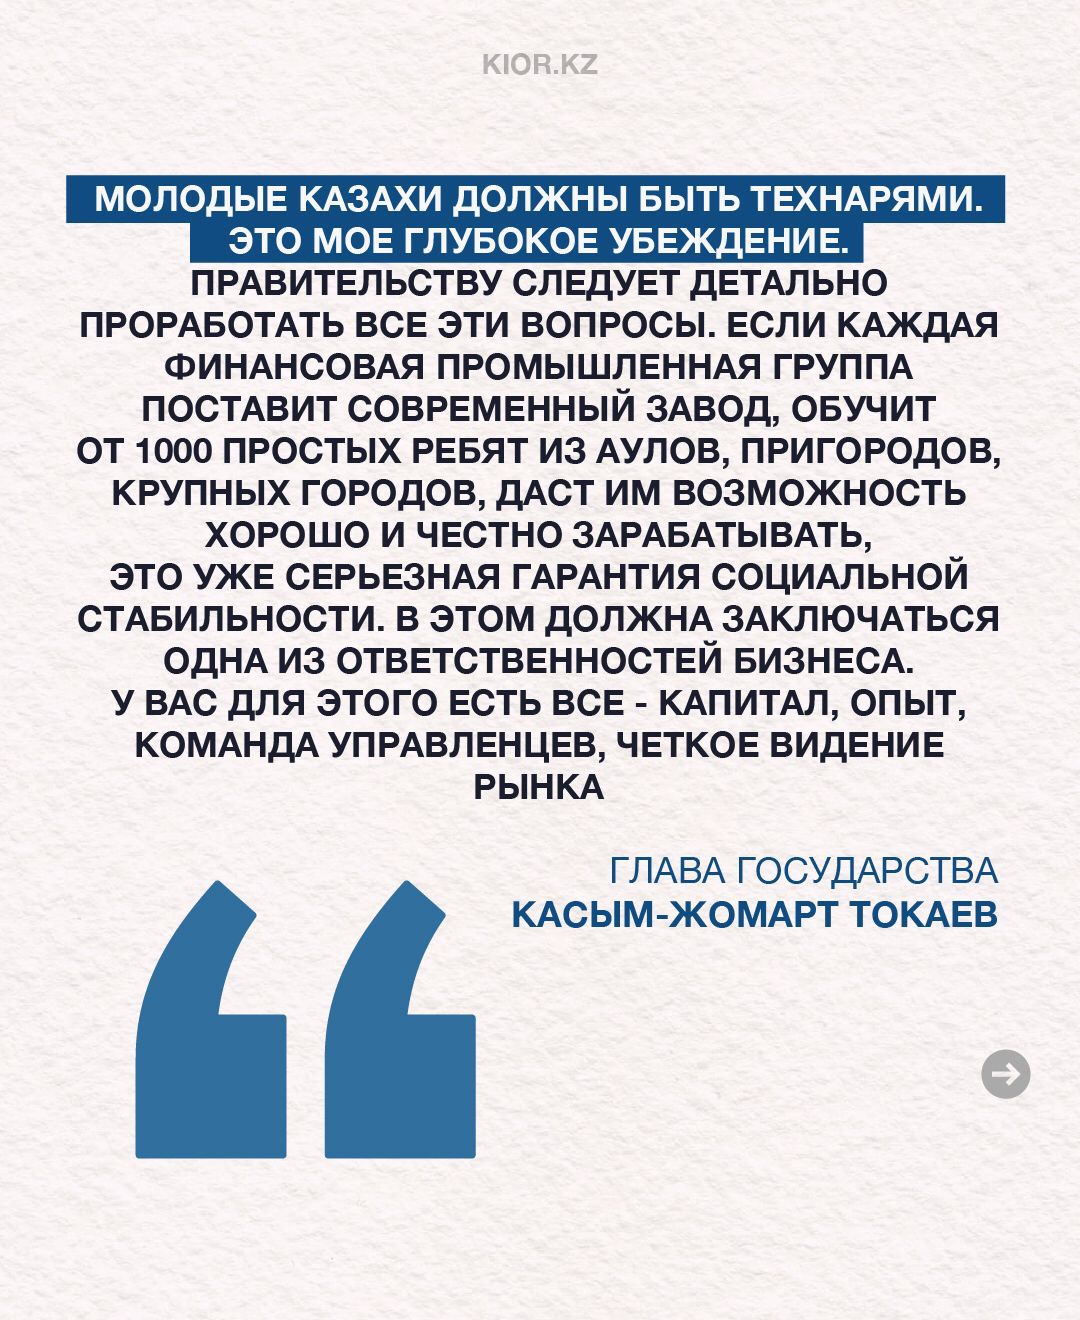 Состоялась встреча Президента Казахстана Касым-Жомарта Токаева с представителями крупного отечественного бизнеса